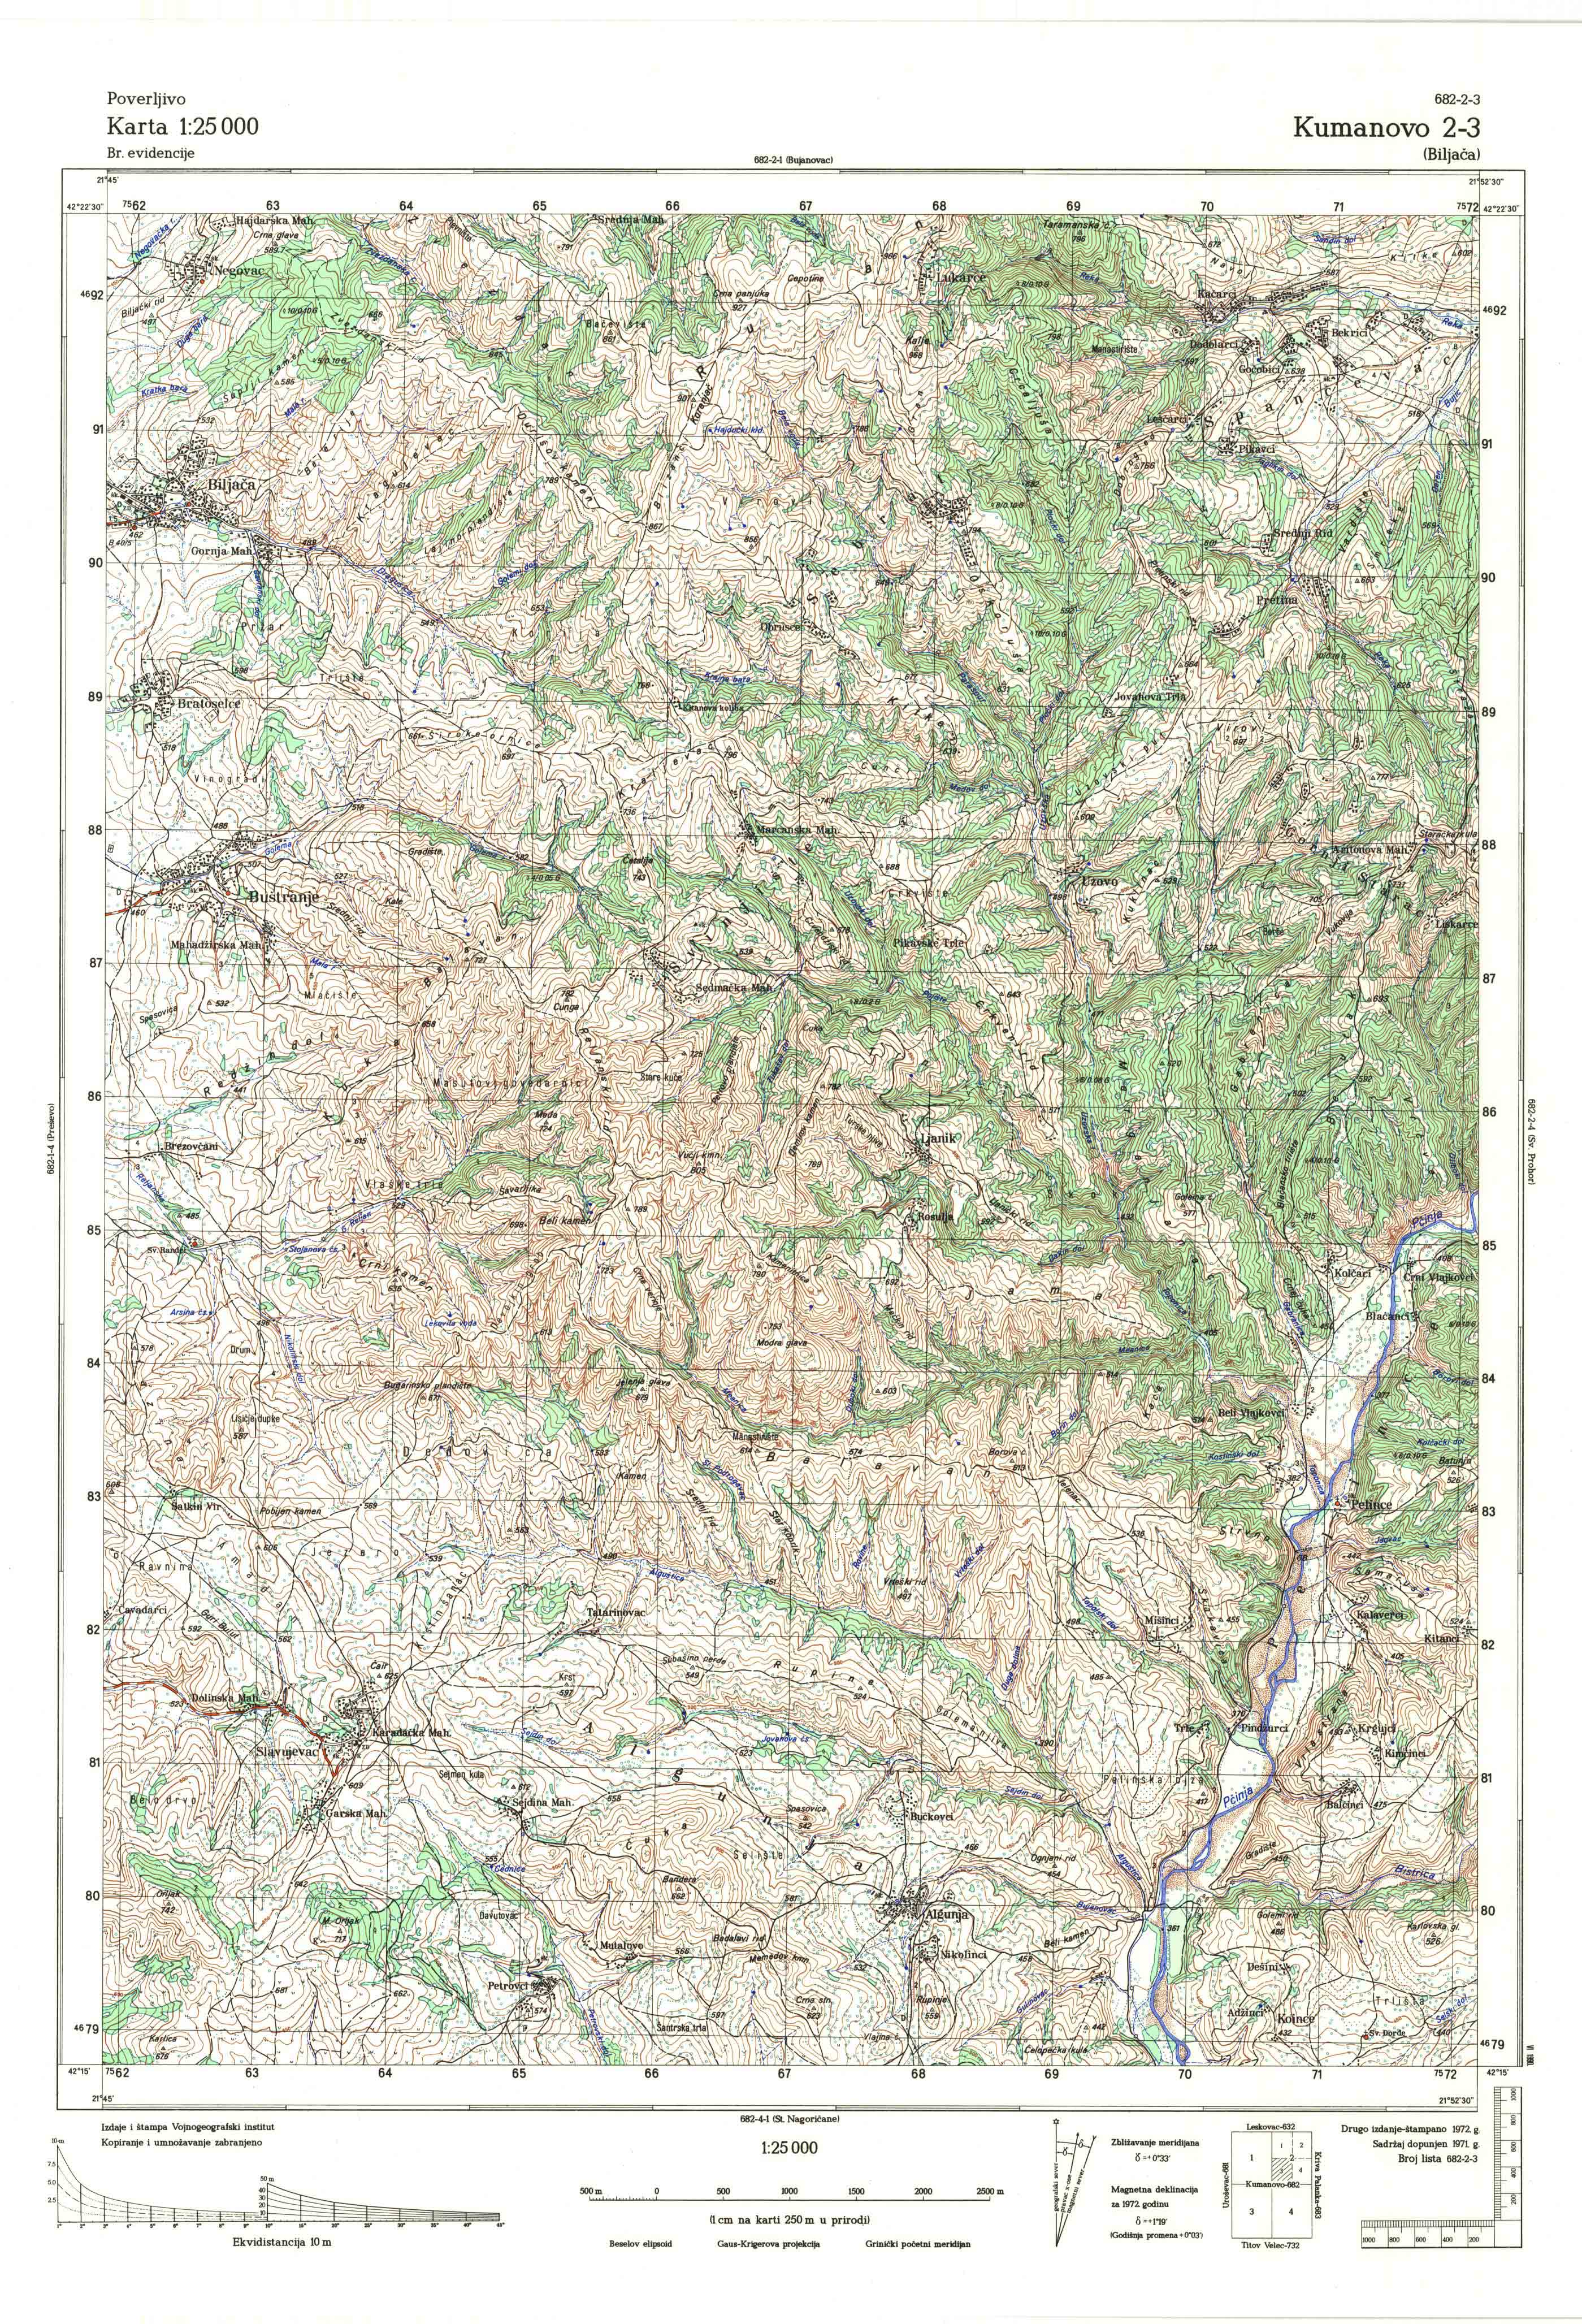  topografska karta makedonije 25000 JNA  kumanovo